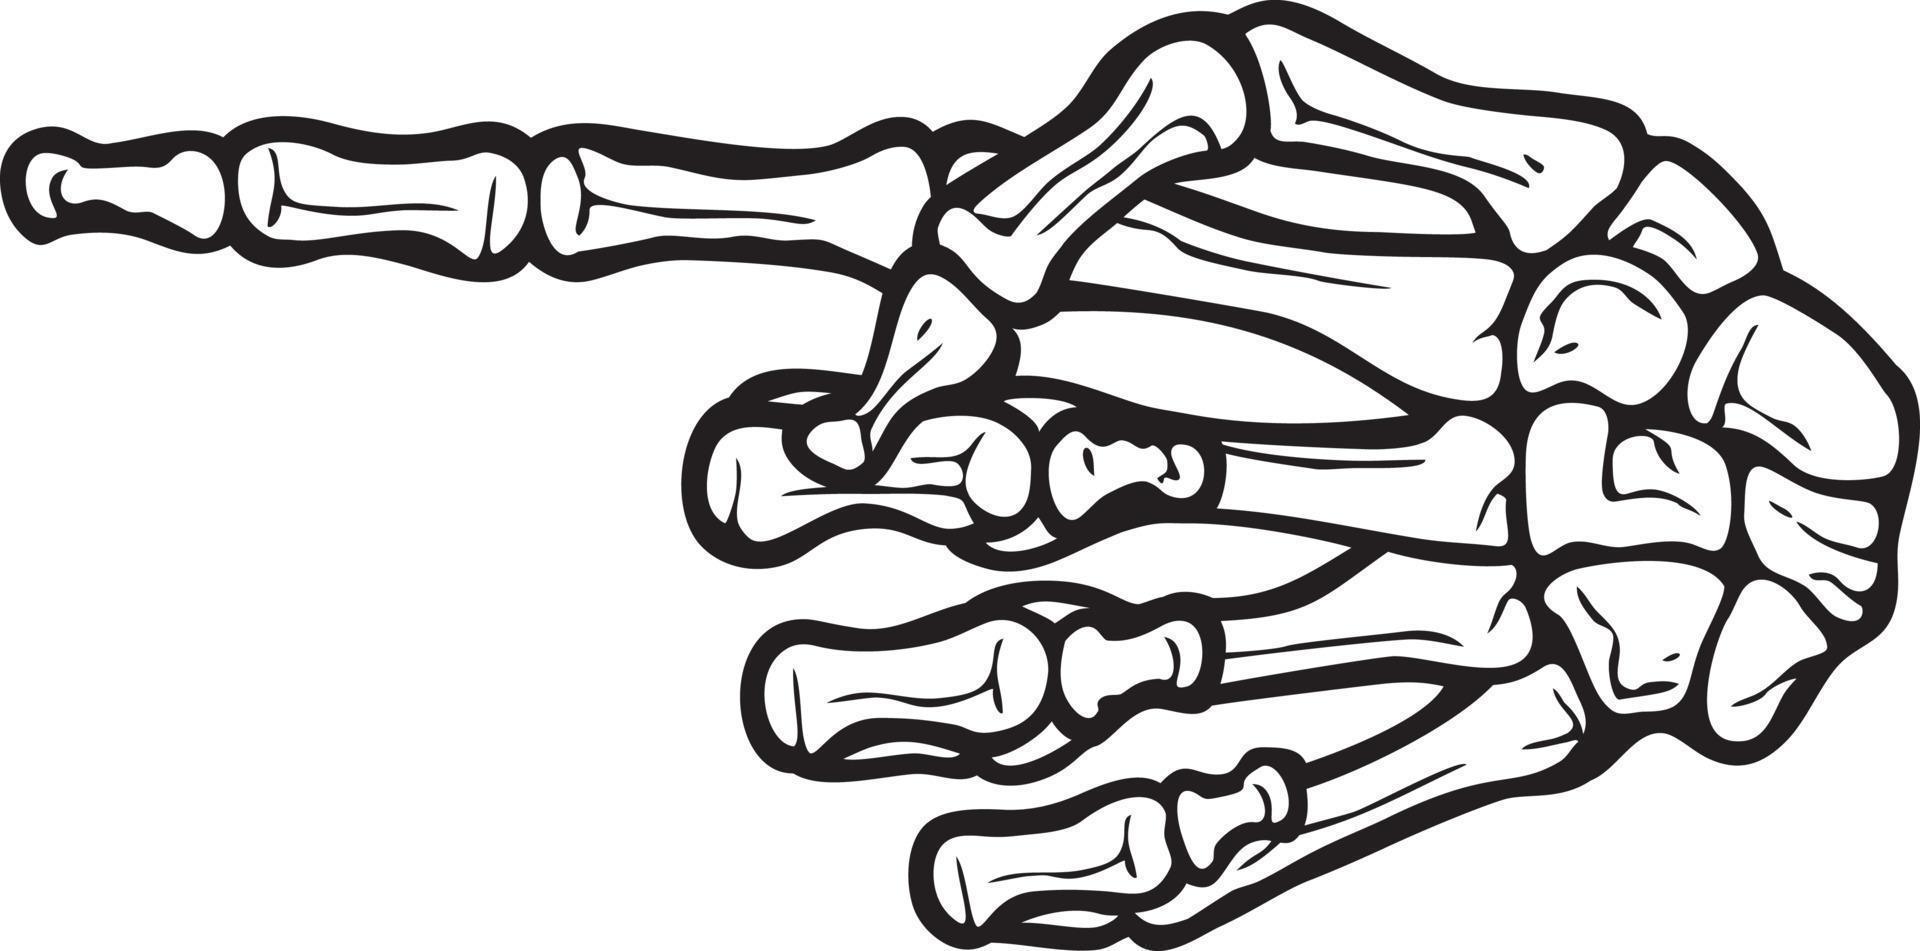 squelette main avec montrer du doigt doigt. vecteur illustration.